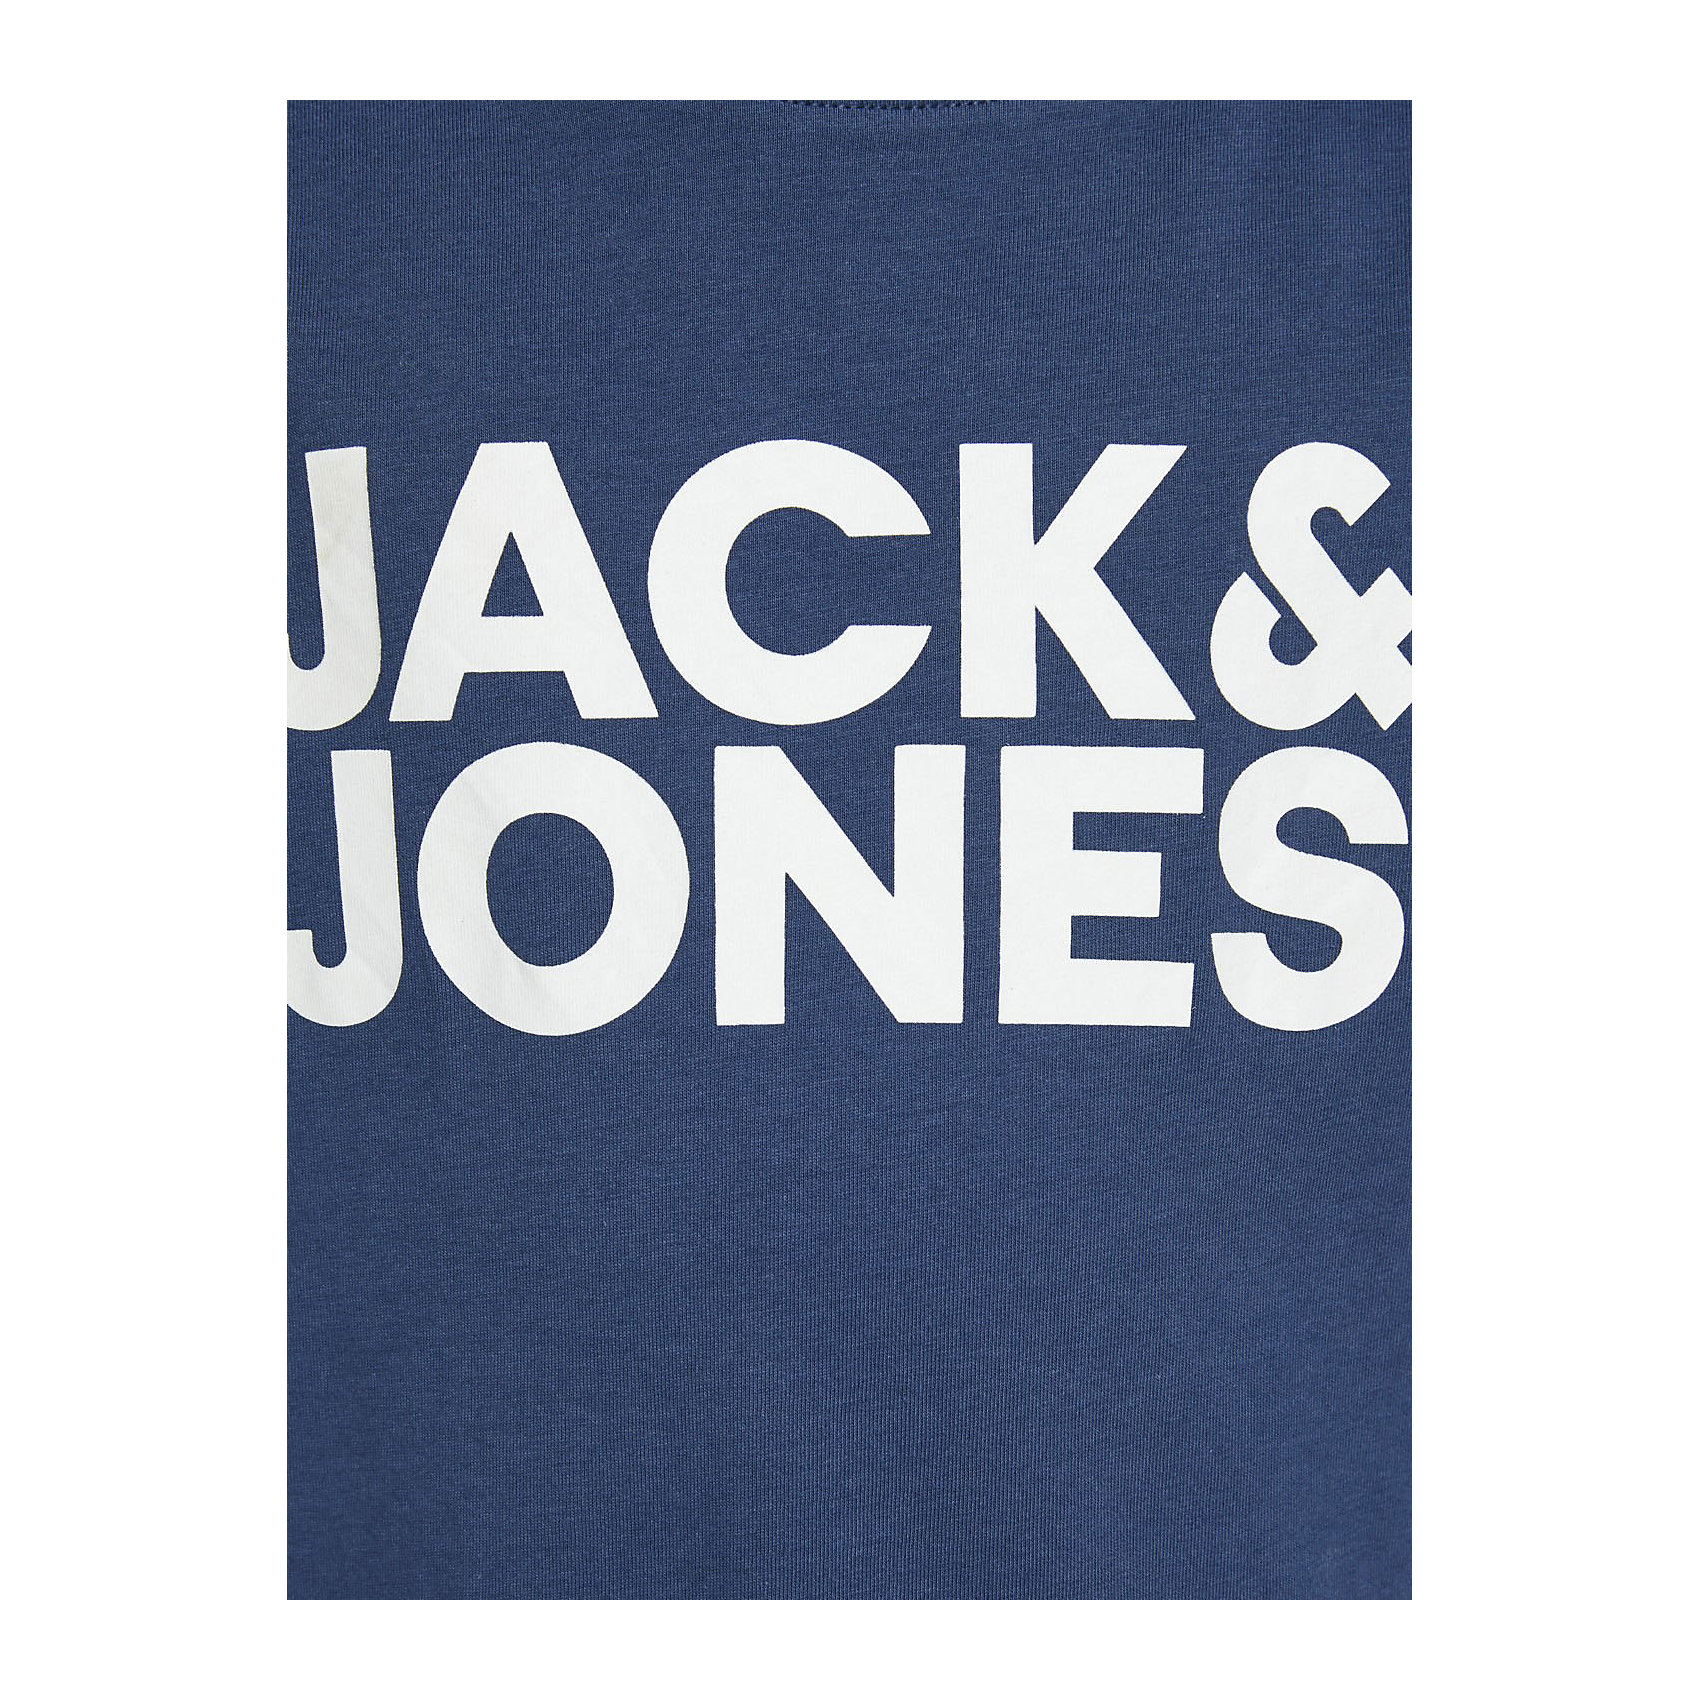 Футболка Jack & Jones JACK & JONES Junior 13711680